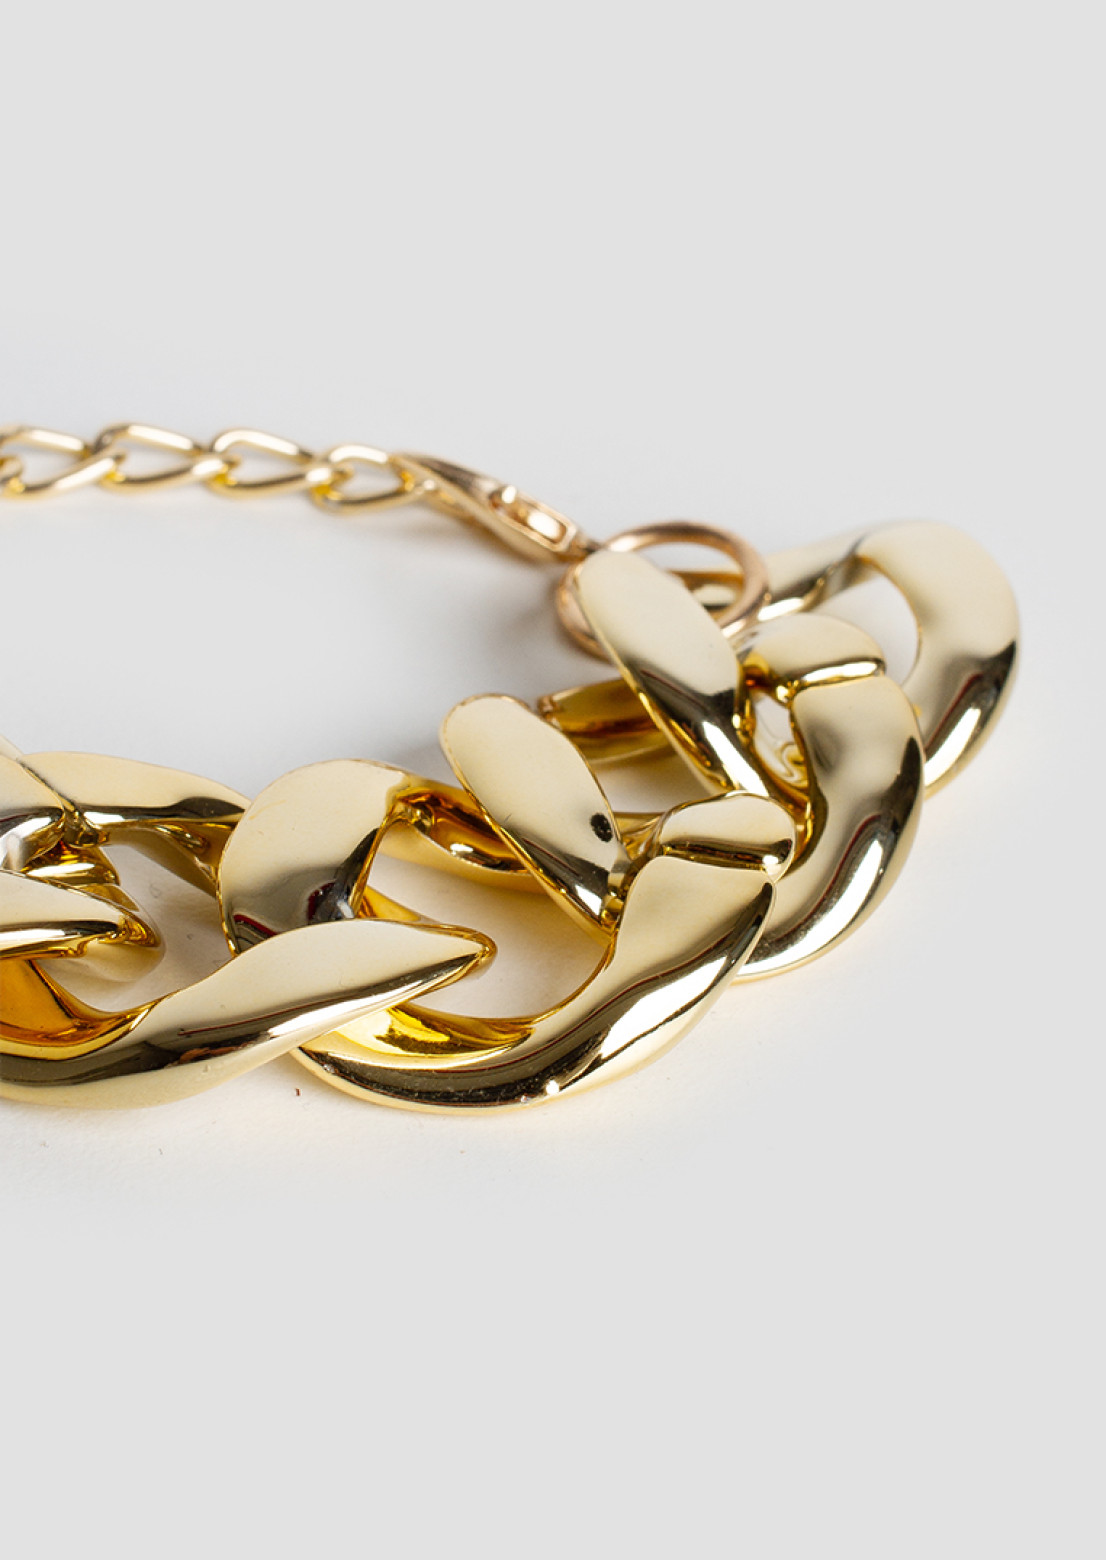 Golden massive bracelet